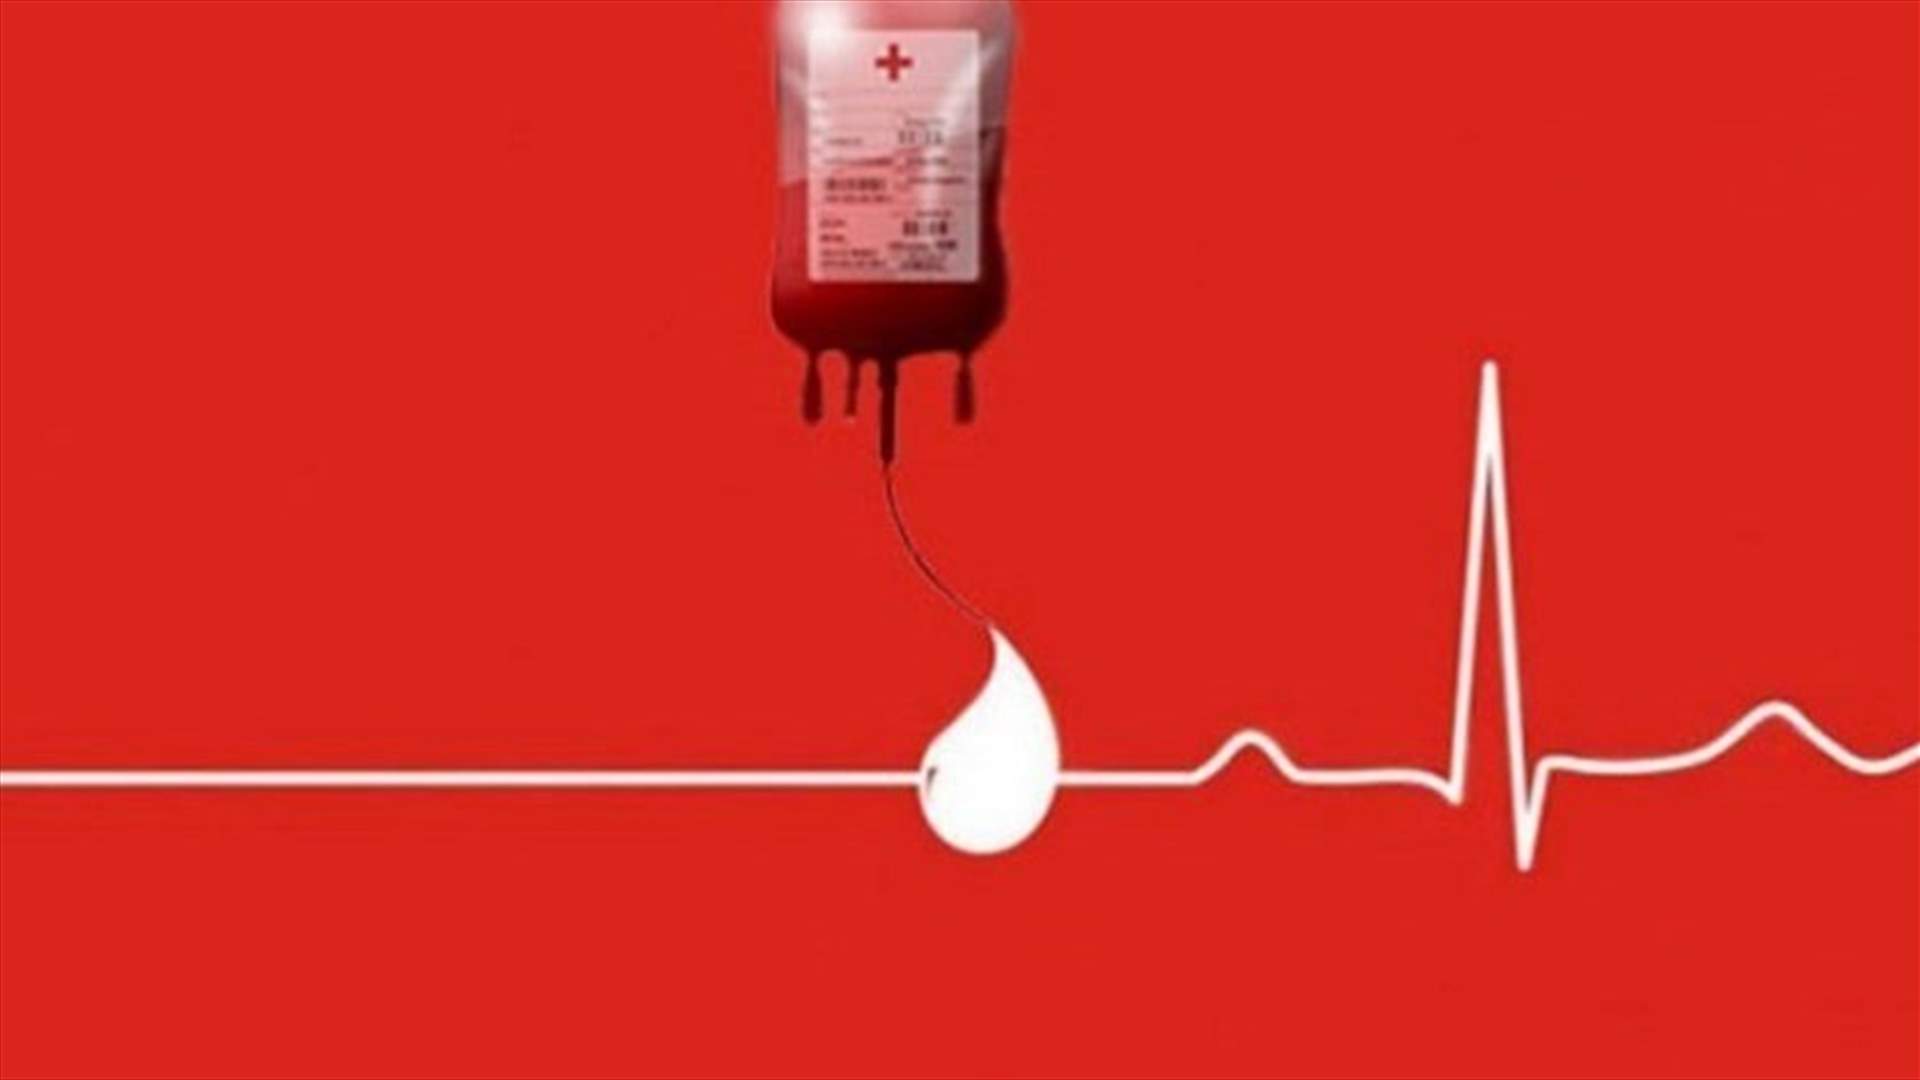 مريض في مستشفى جبل لبنان بحاجة ماسة لبلاكيت دم غداً... للتبرع الاتصال على: 71397136